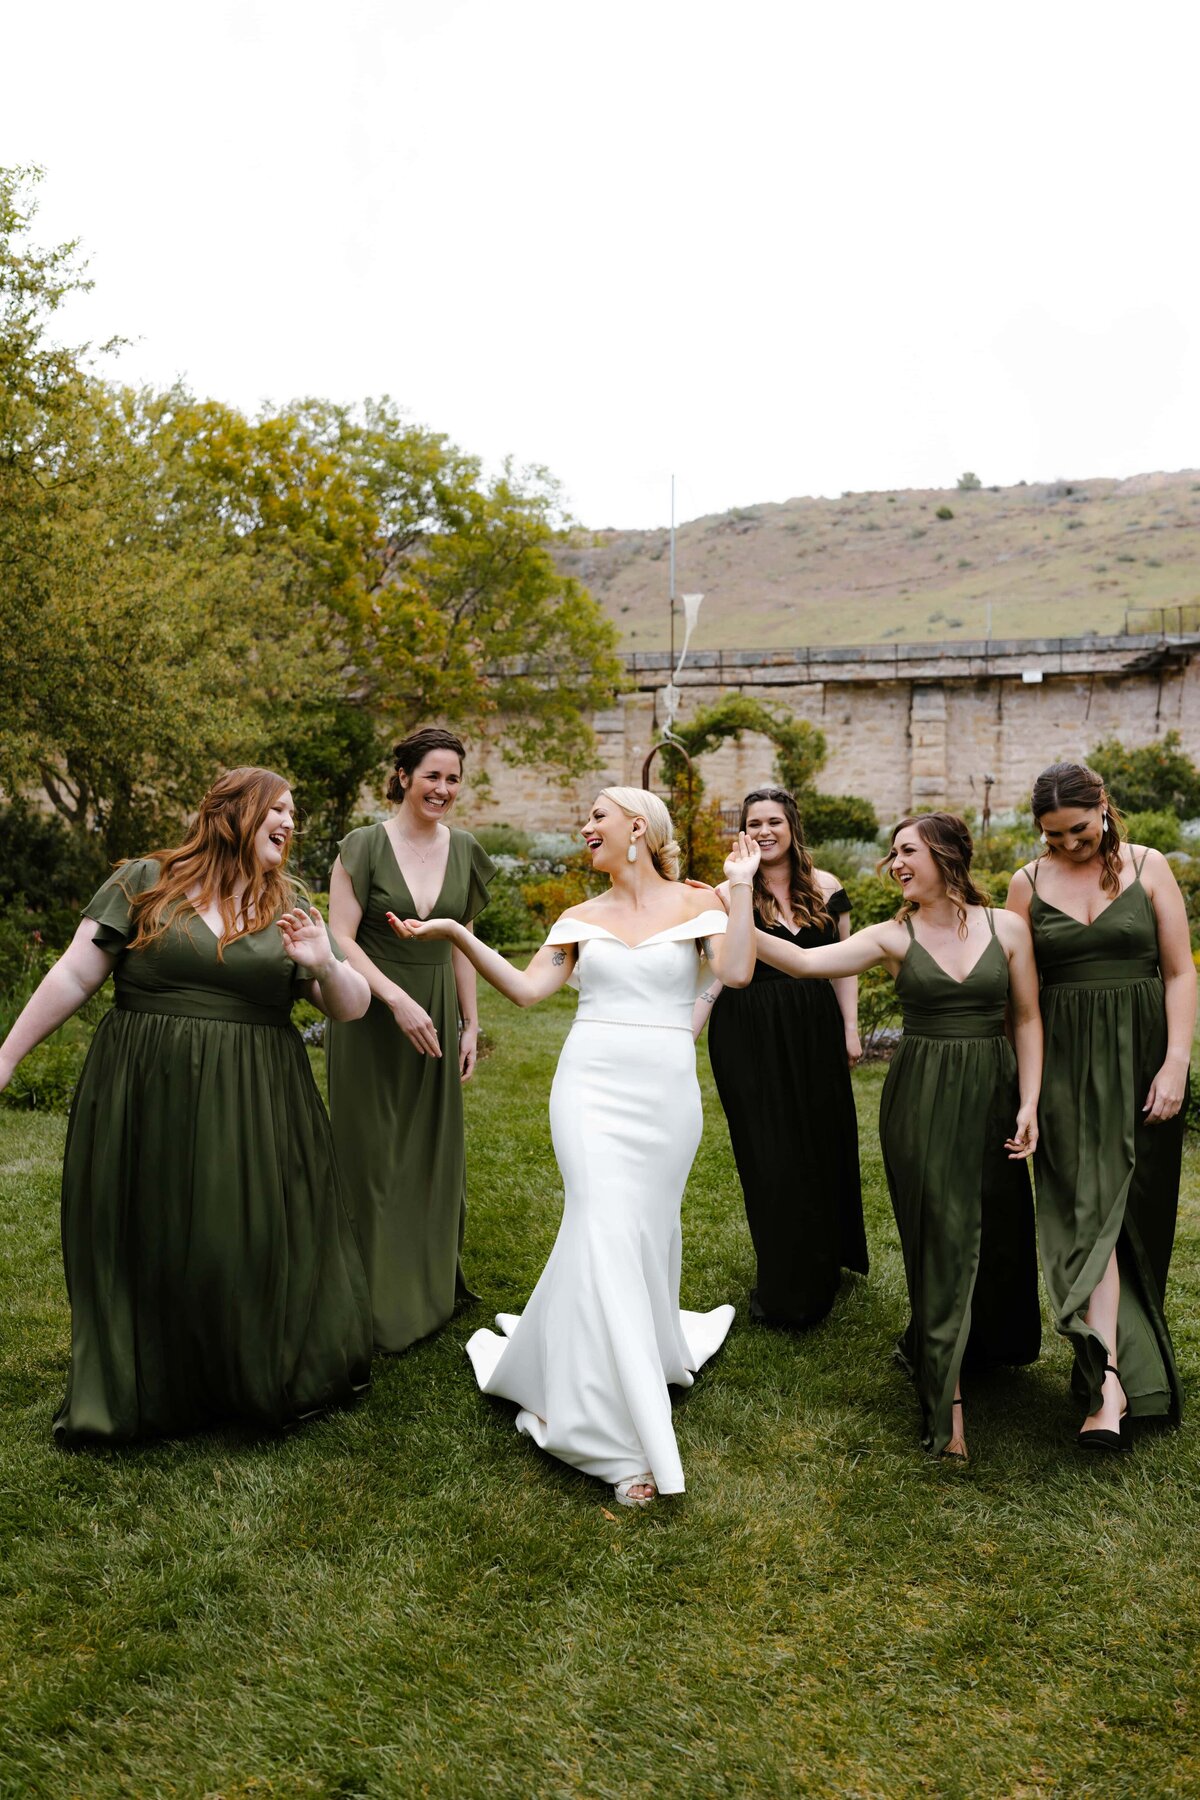 A bridal party photo at the Idaho Botanical Garden before a wedding